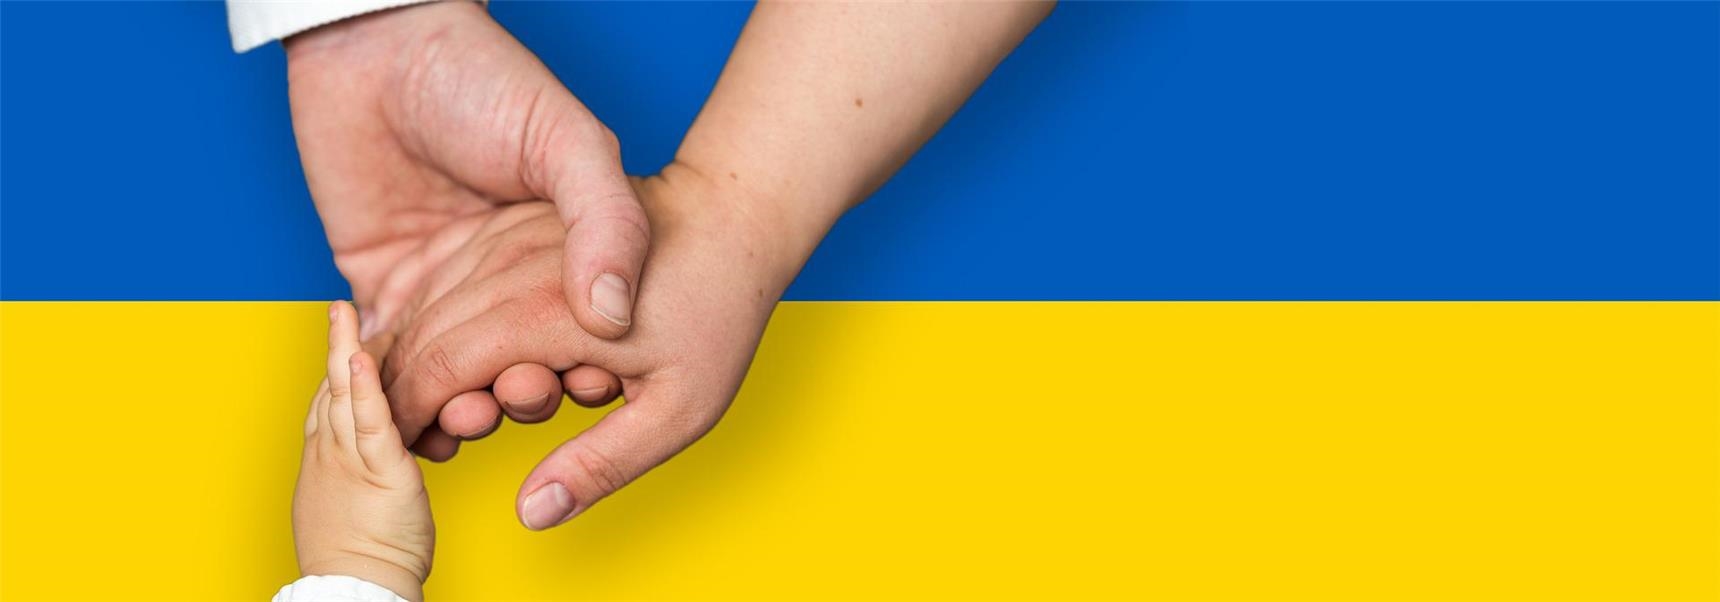 Hände symbolisieren Uusammenhalt vor ukrainischer Flagge